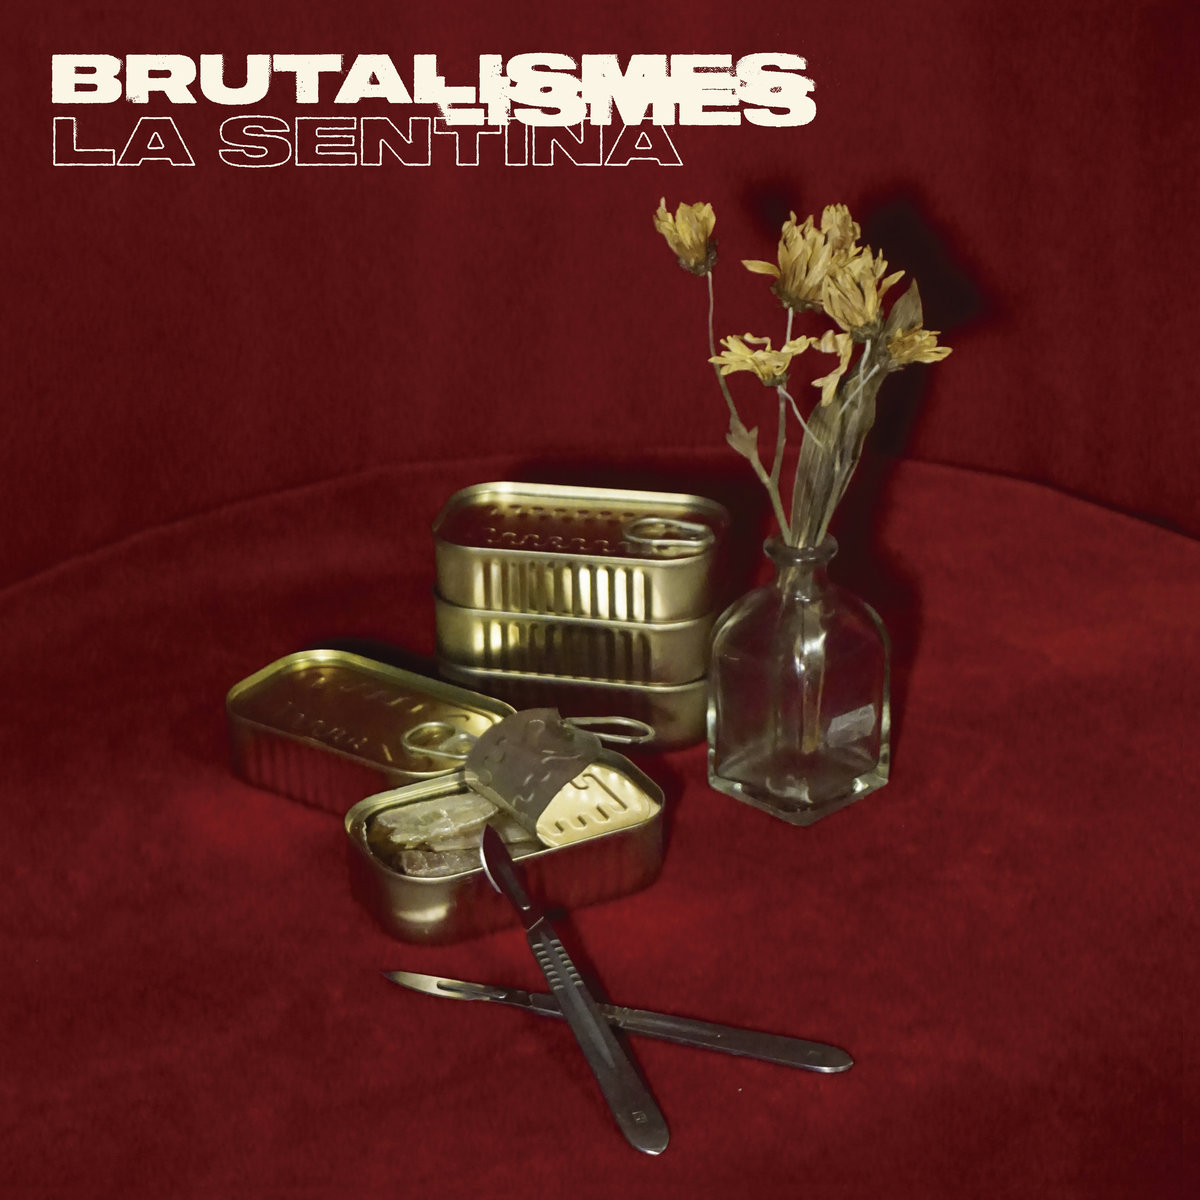 La Sentina "Brutalismes" LP